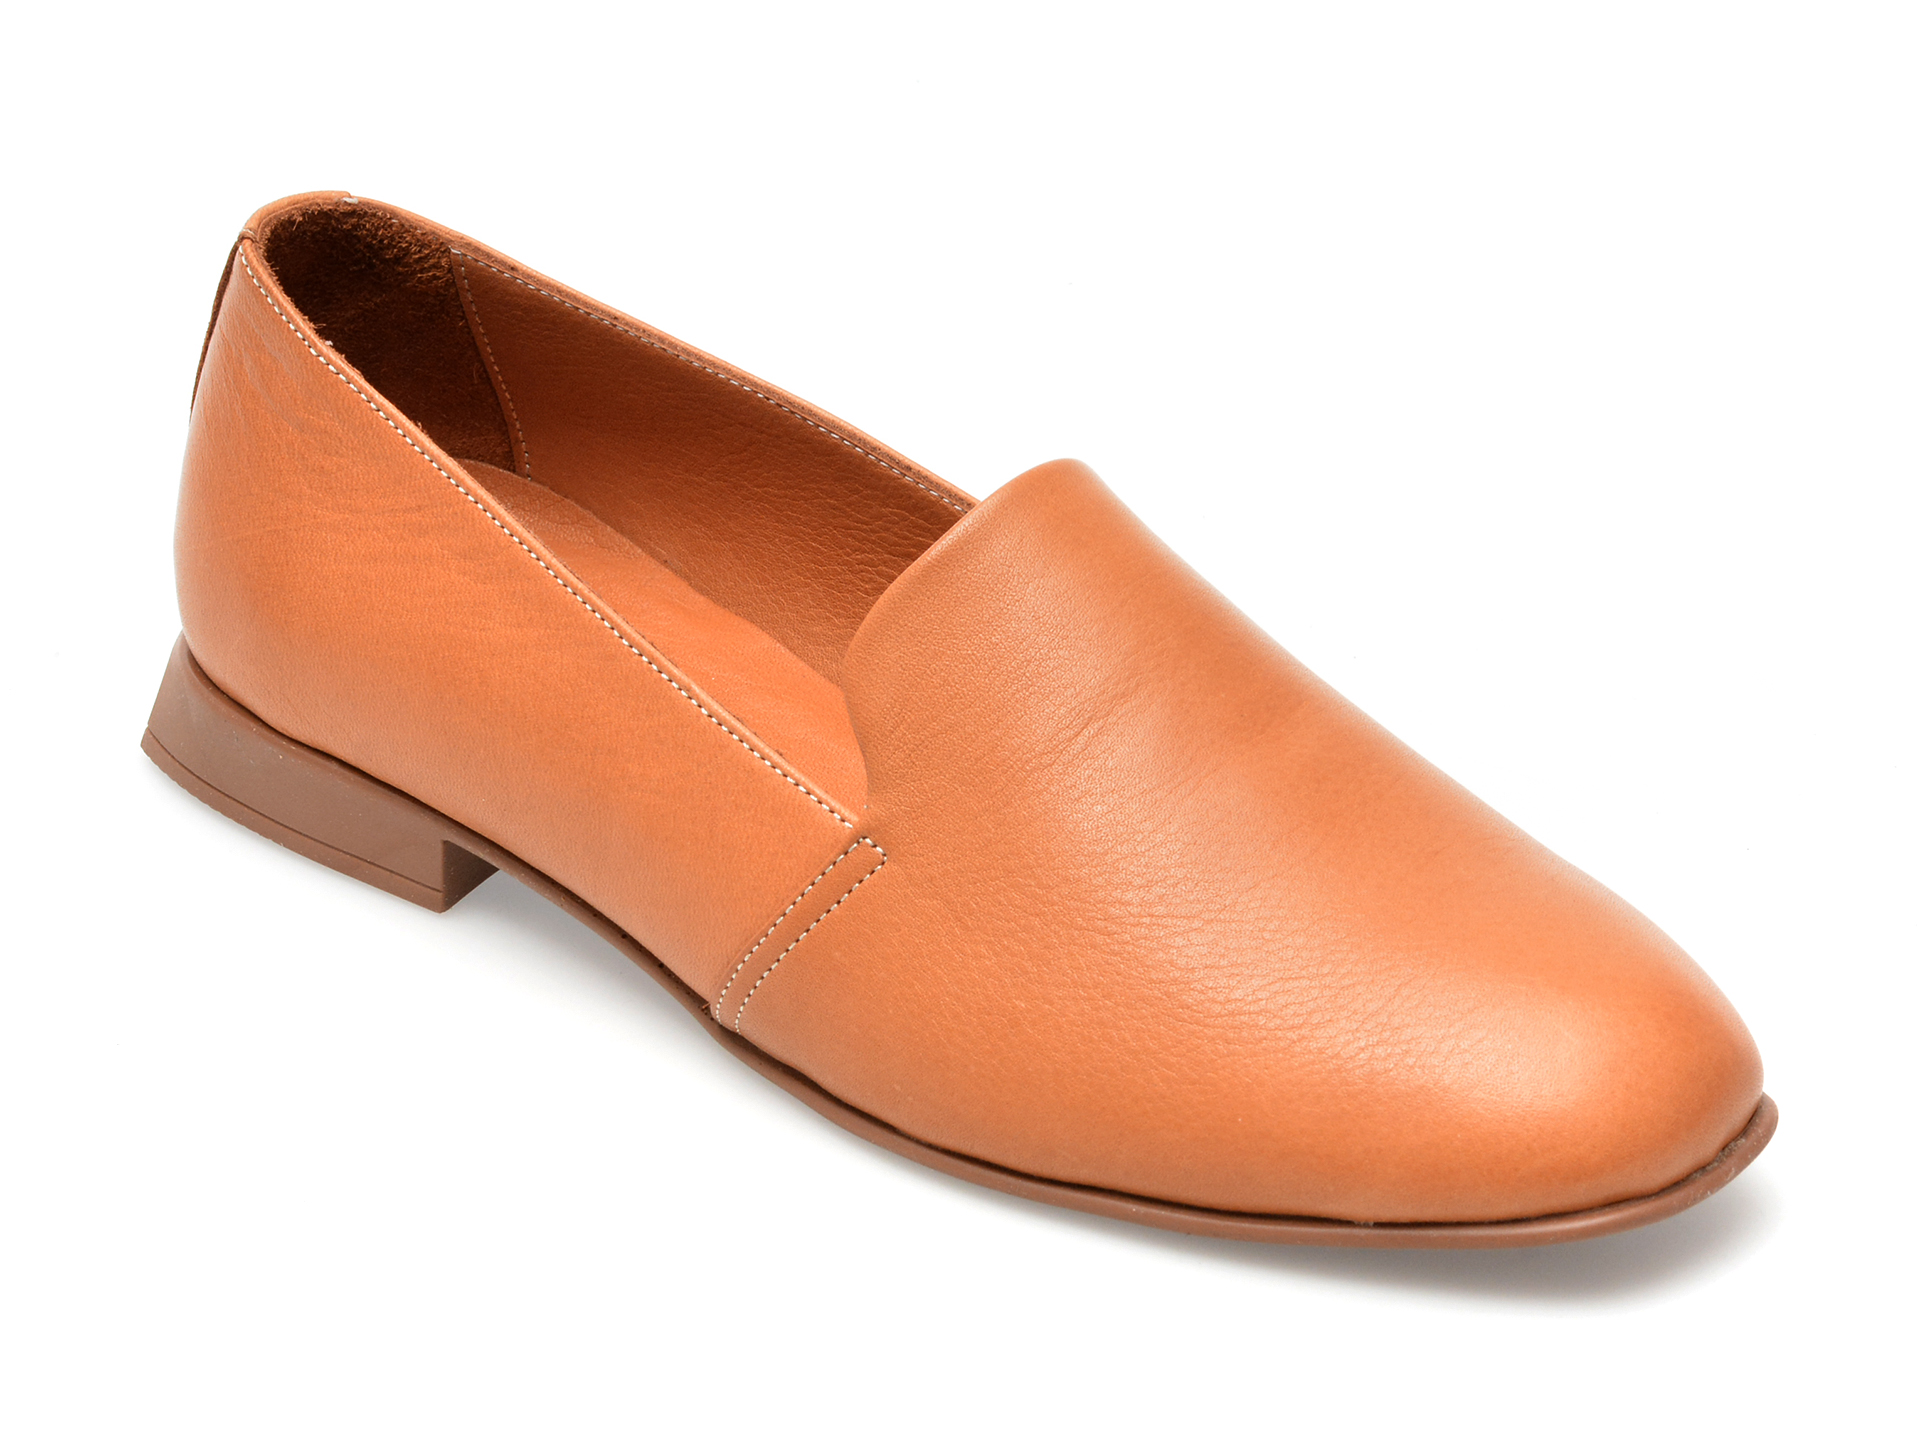 Pantofi GRYXX maro, 10775, din piele naturala Femei 2023-05-28